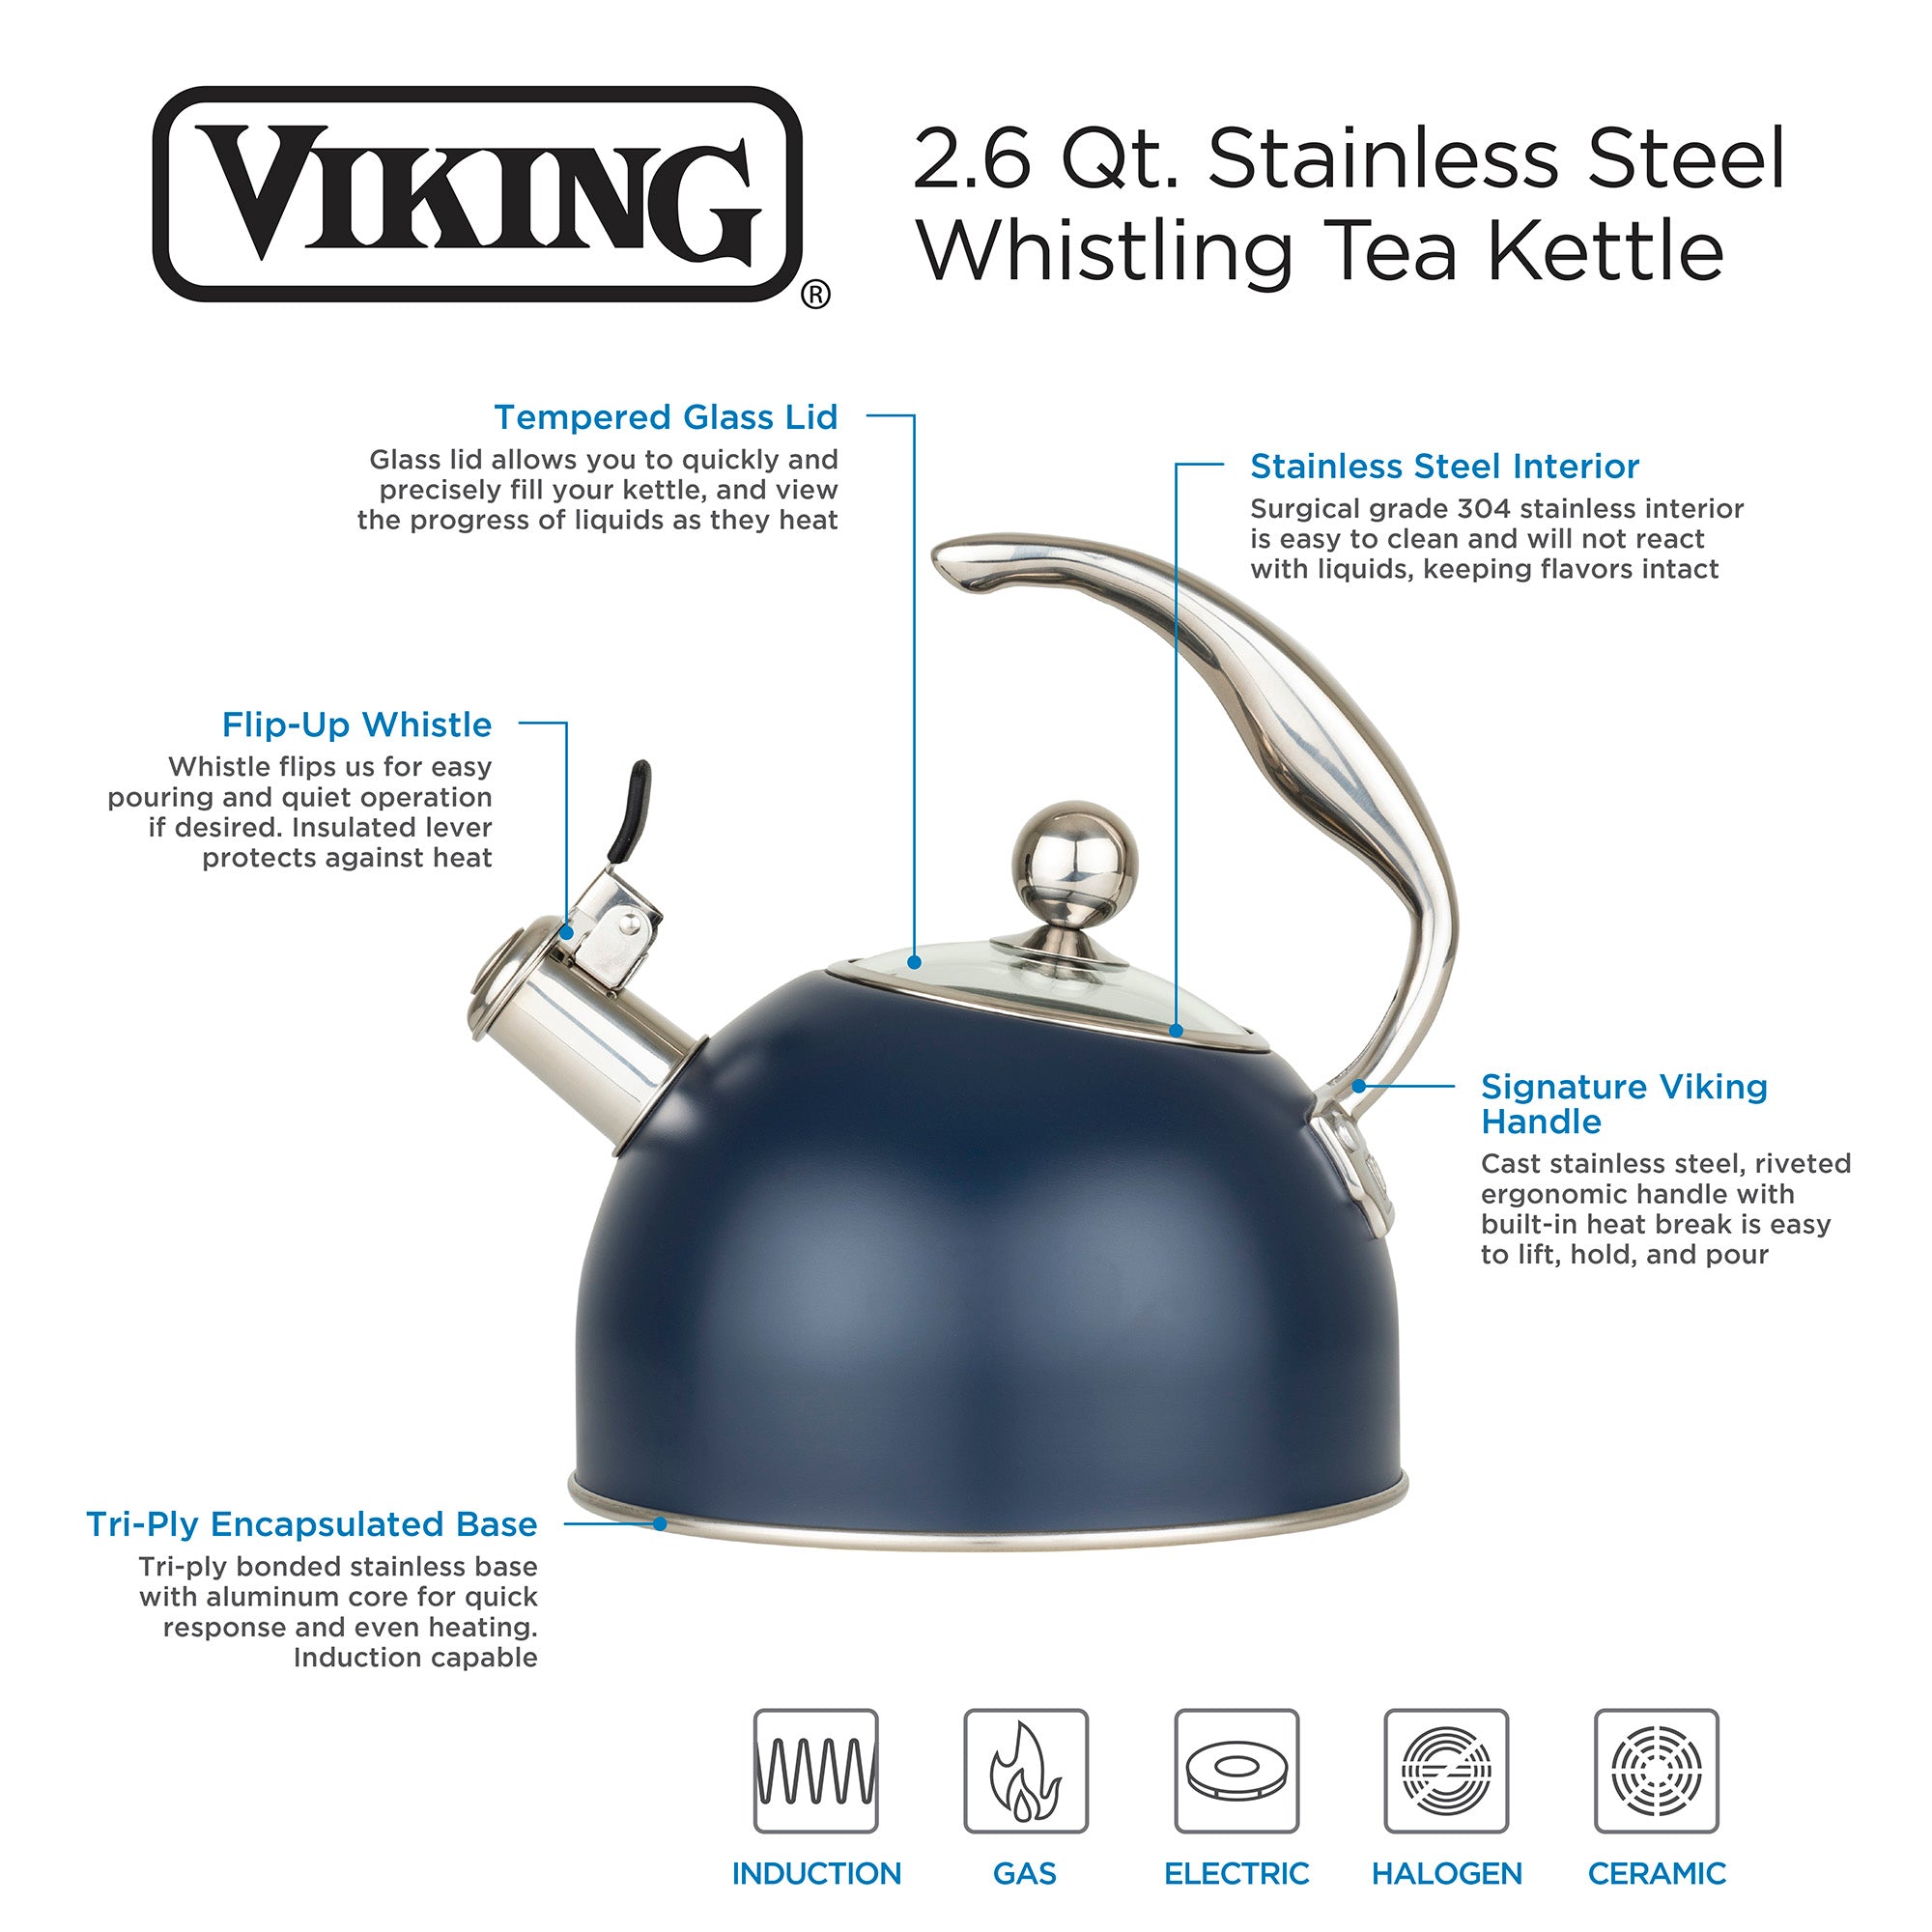 Viking Stainless Steel 2.6 Quart Whistling Tea Kettles - The Peppermill